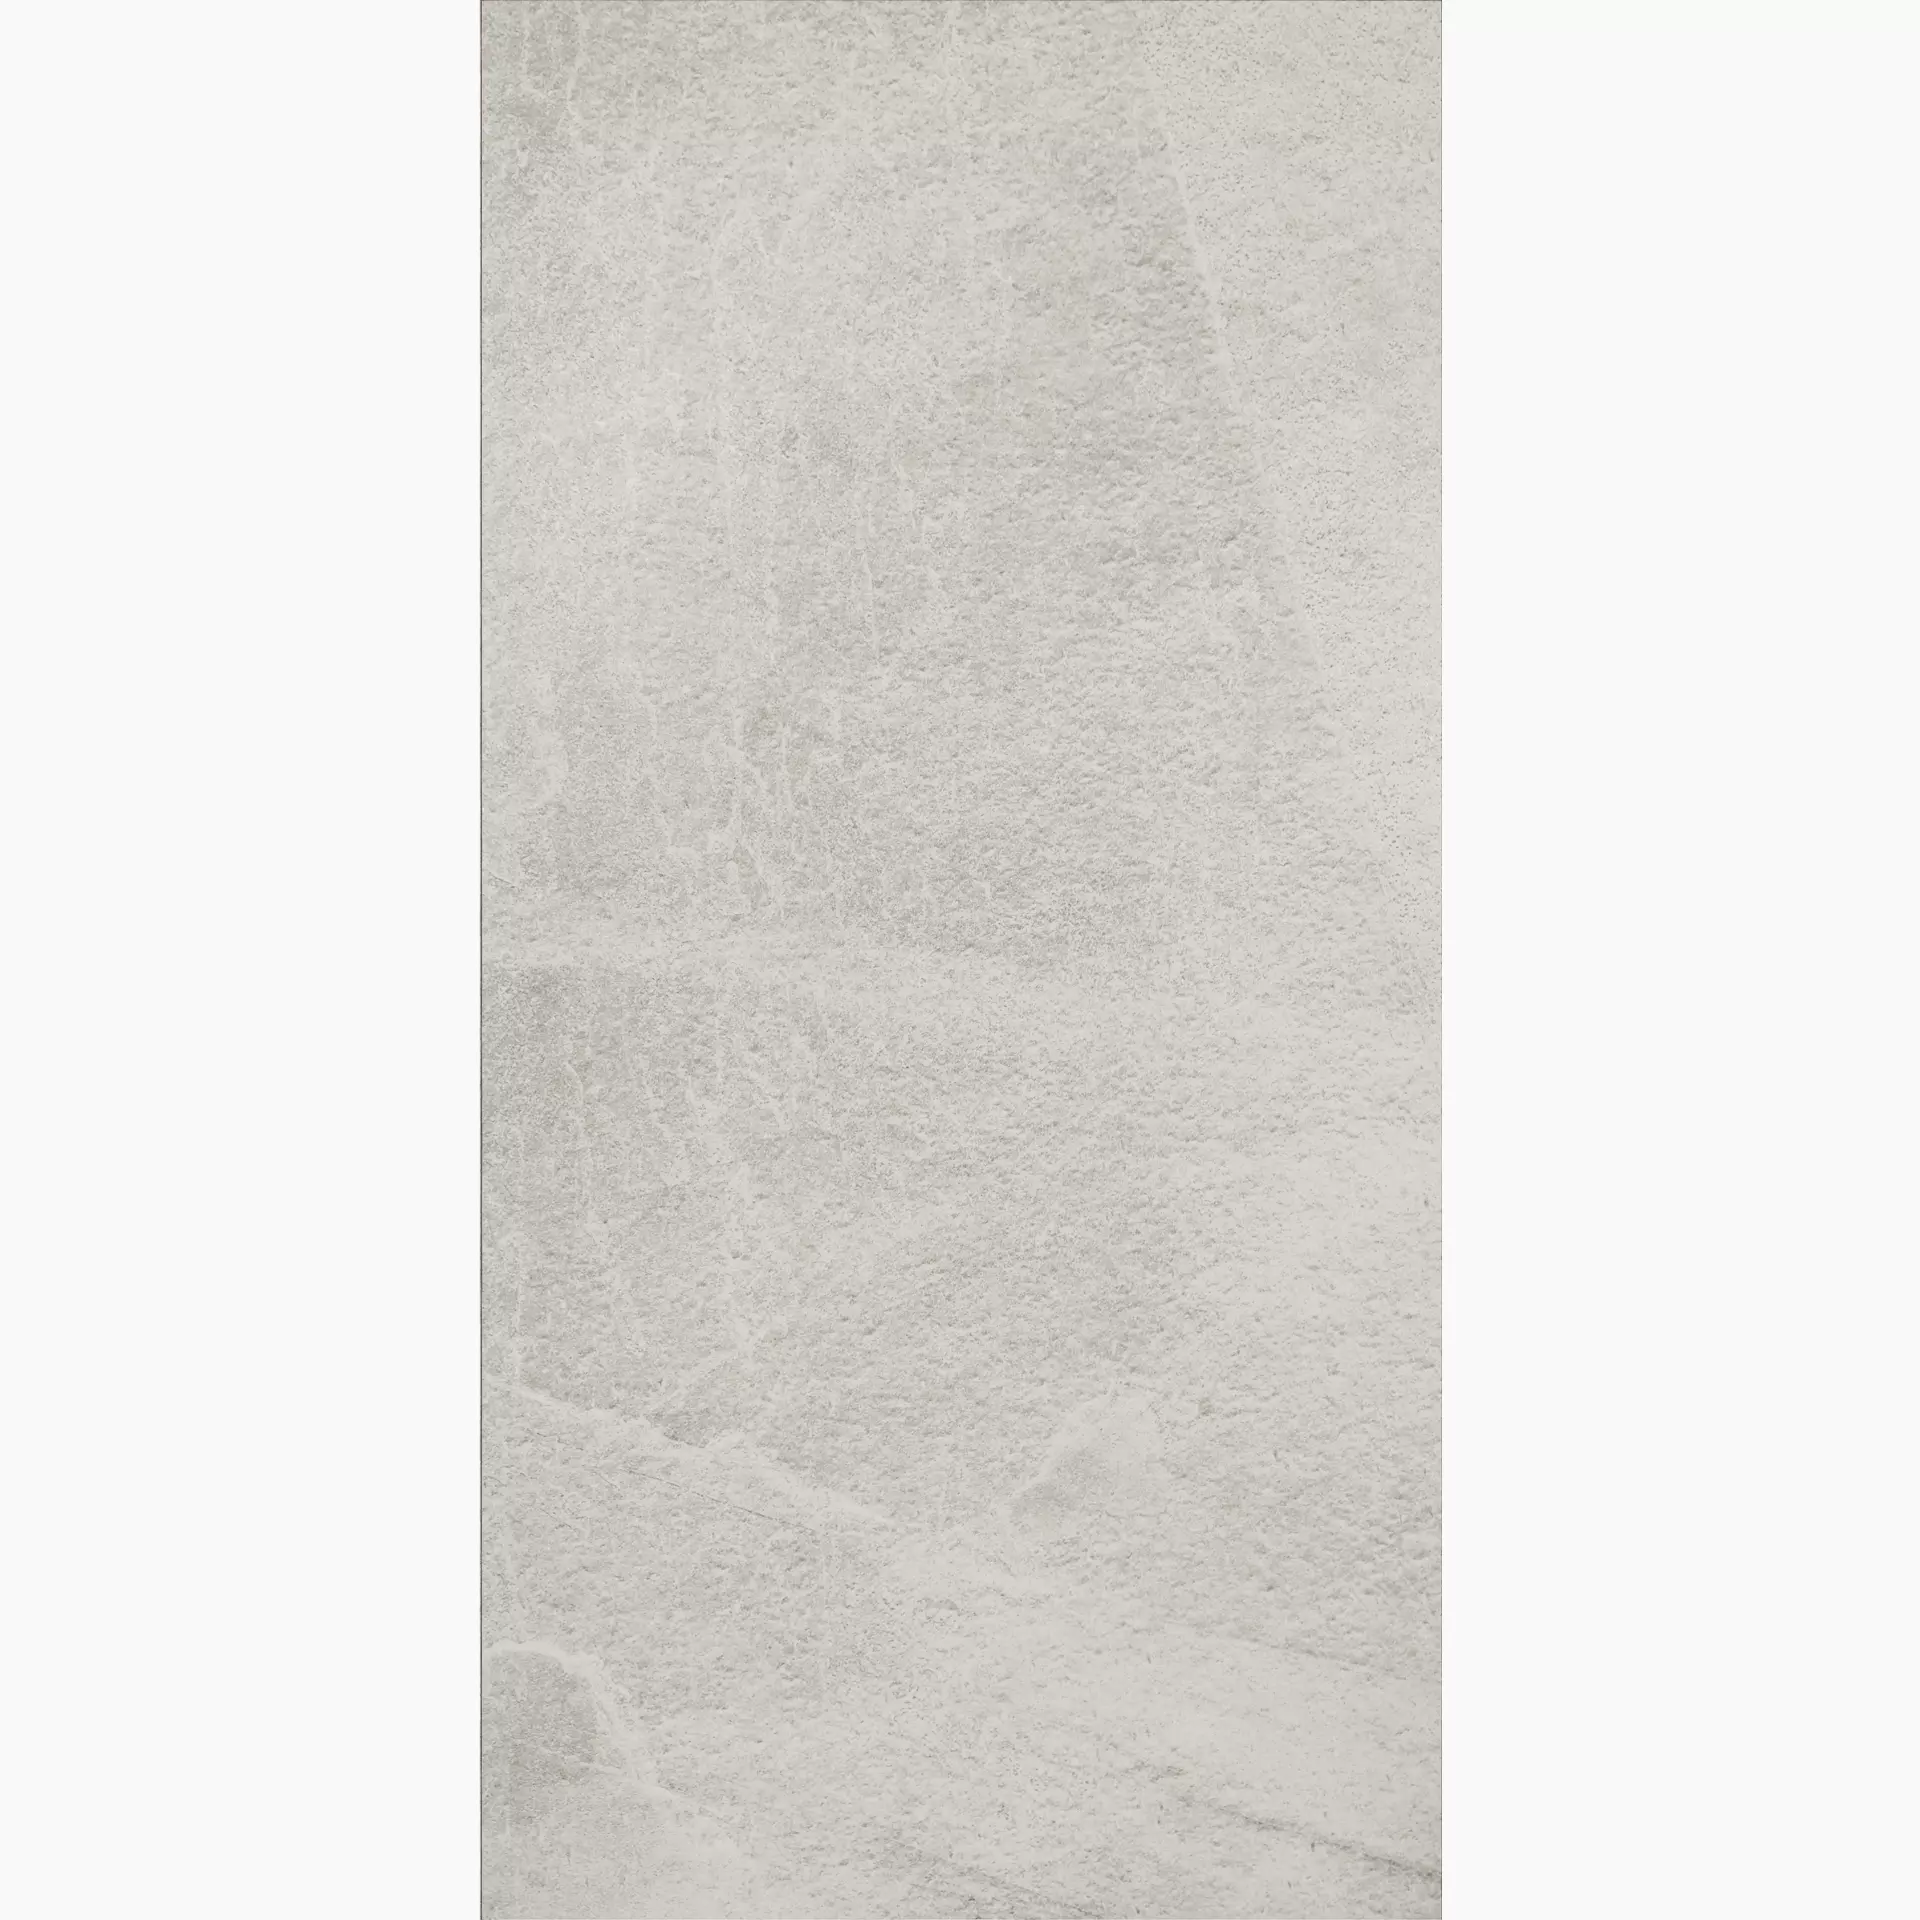 Imola X-Rock White Natural Slate Cut Matt fondi 30x60cm rectified 10mm - X-ROCK 36W